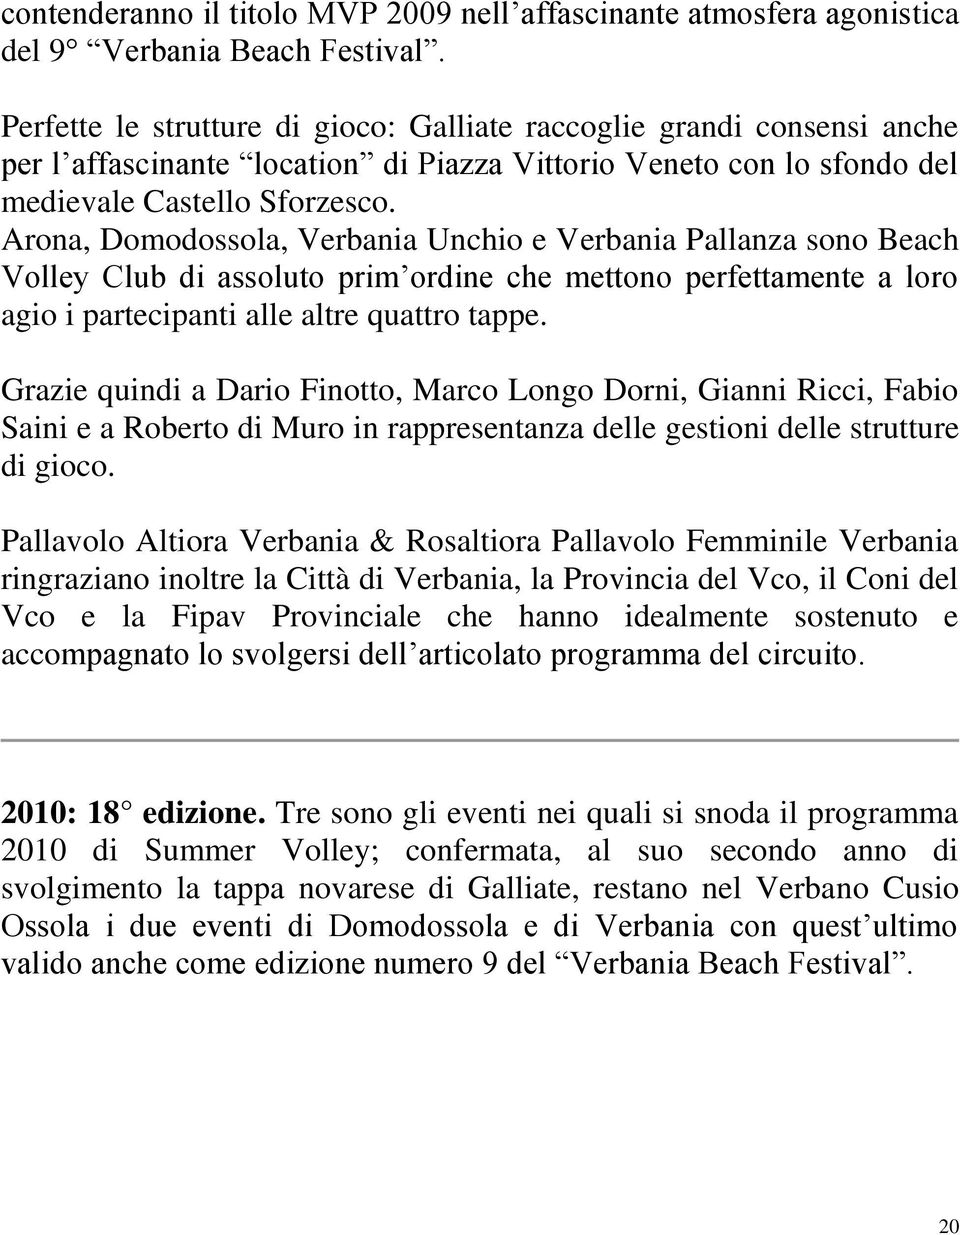 Arona, Domodossola, Verbania Unchio e Verbania Pallanza sono Beach Volley Club di assoluto prim ordine che mettono perfettamente a loro agio i partecipanti alle altre quattro tappe.